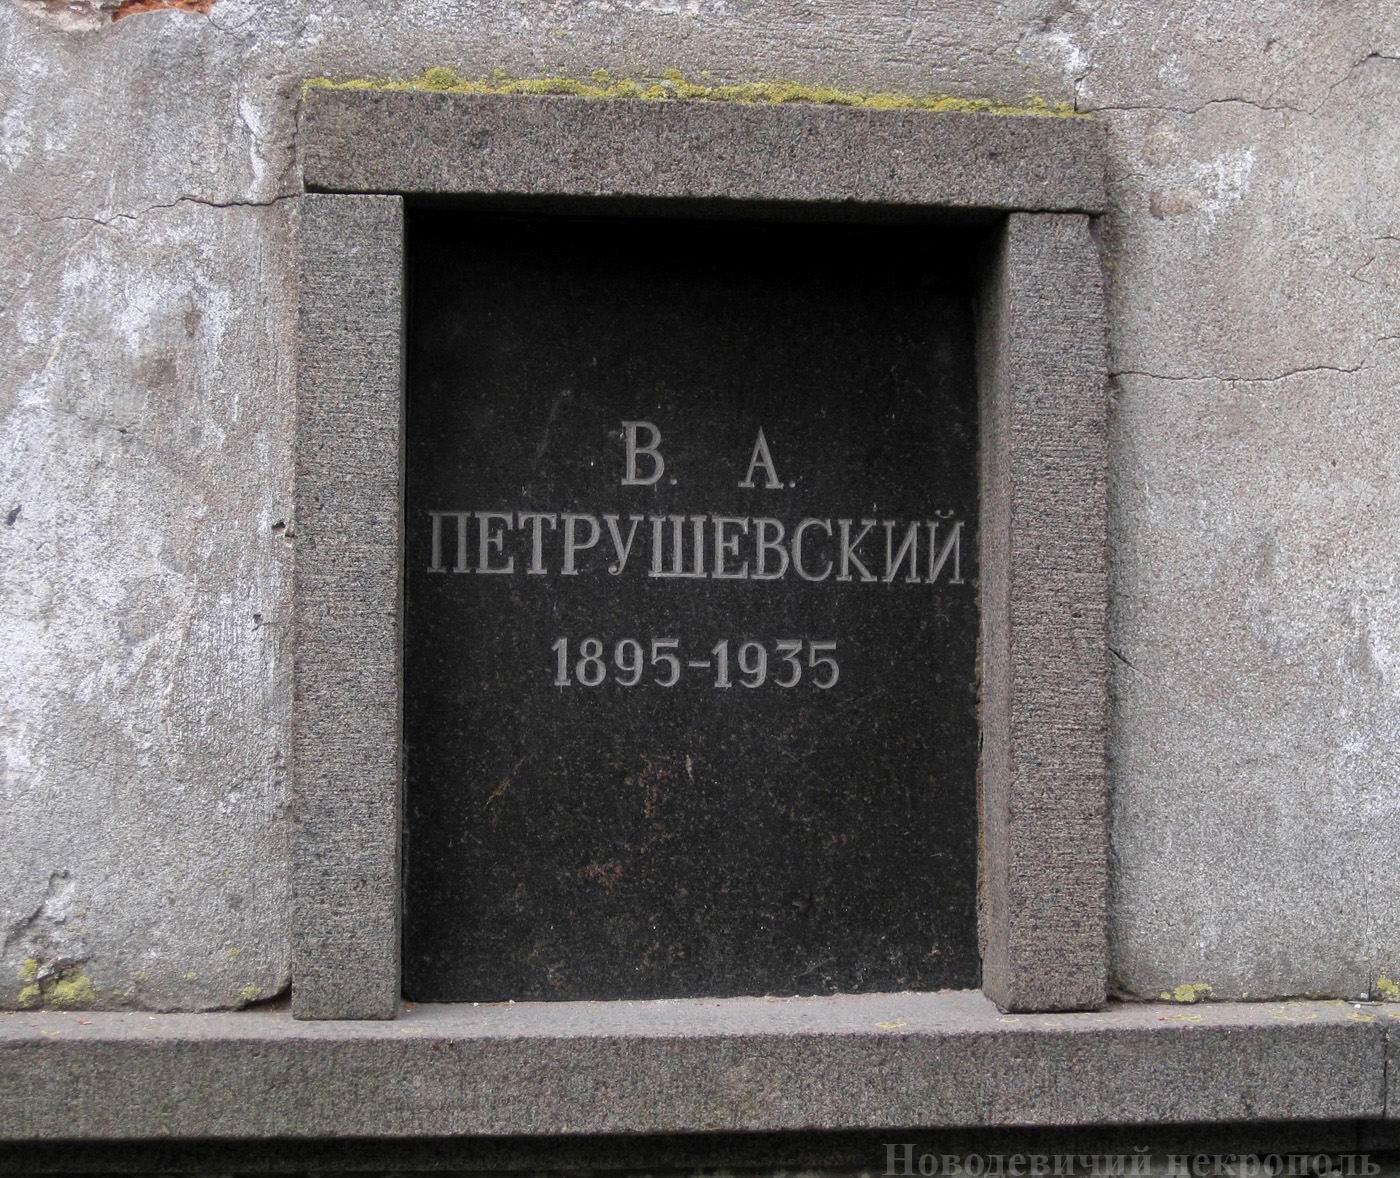 Плита на нише Петрушевского В.А. (1895–1935), на Новодевичьем кладбище (колумбарий [3]–35). Нажмите левую кнопку мыши, чтобы увидеть общий вид секции.